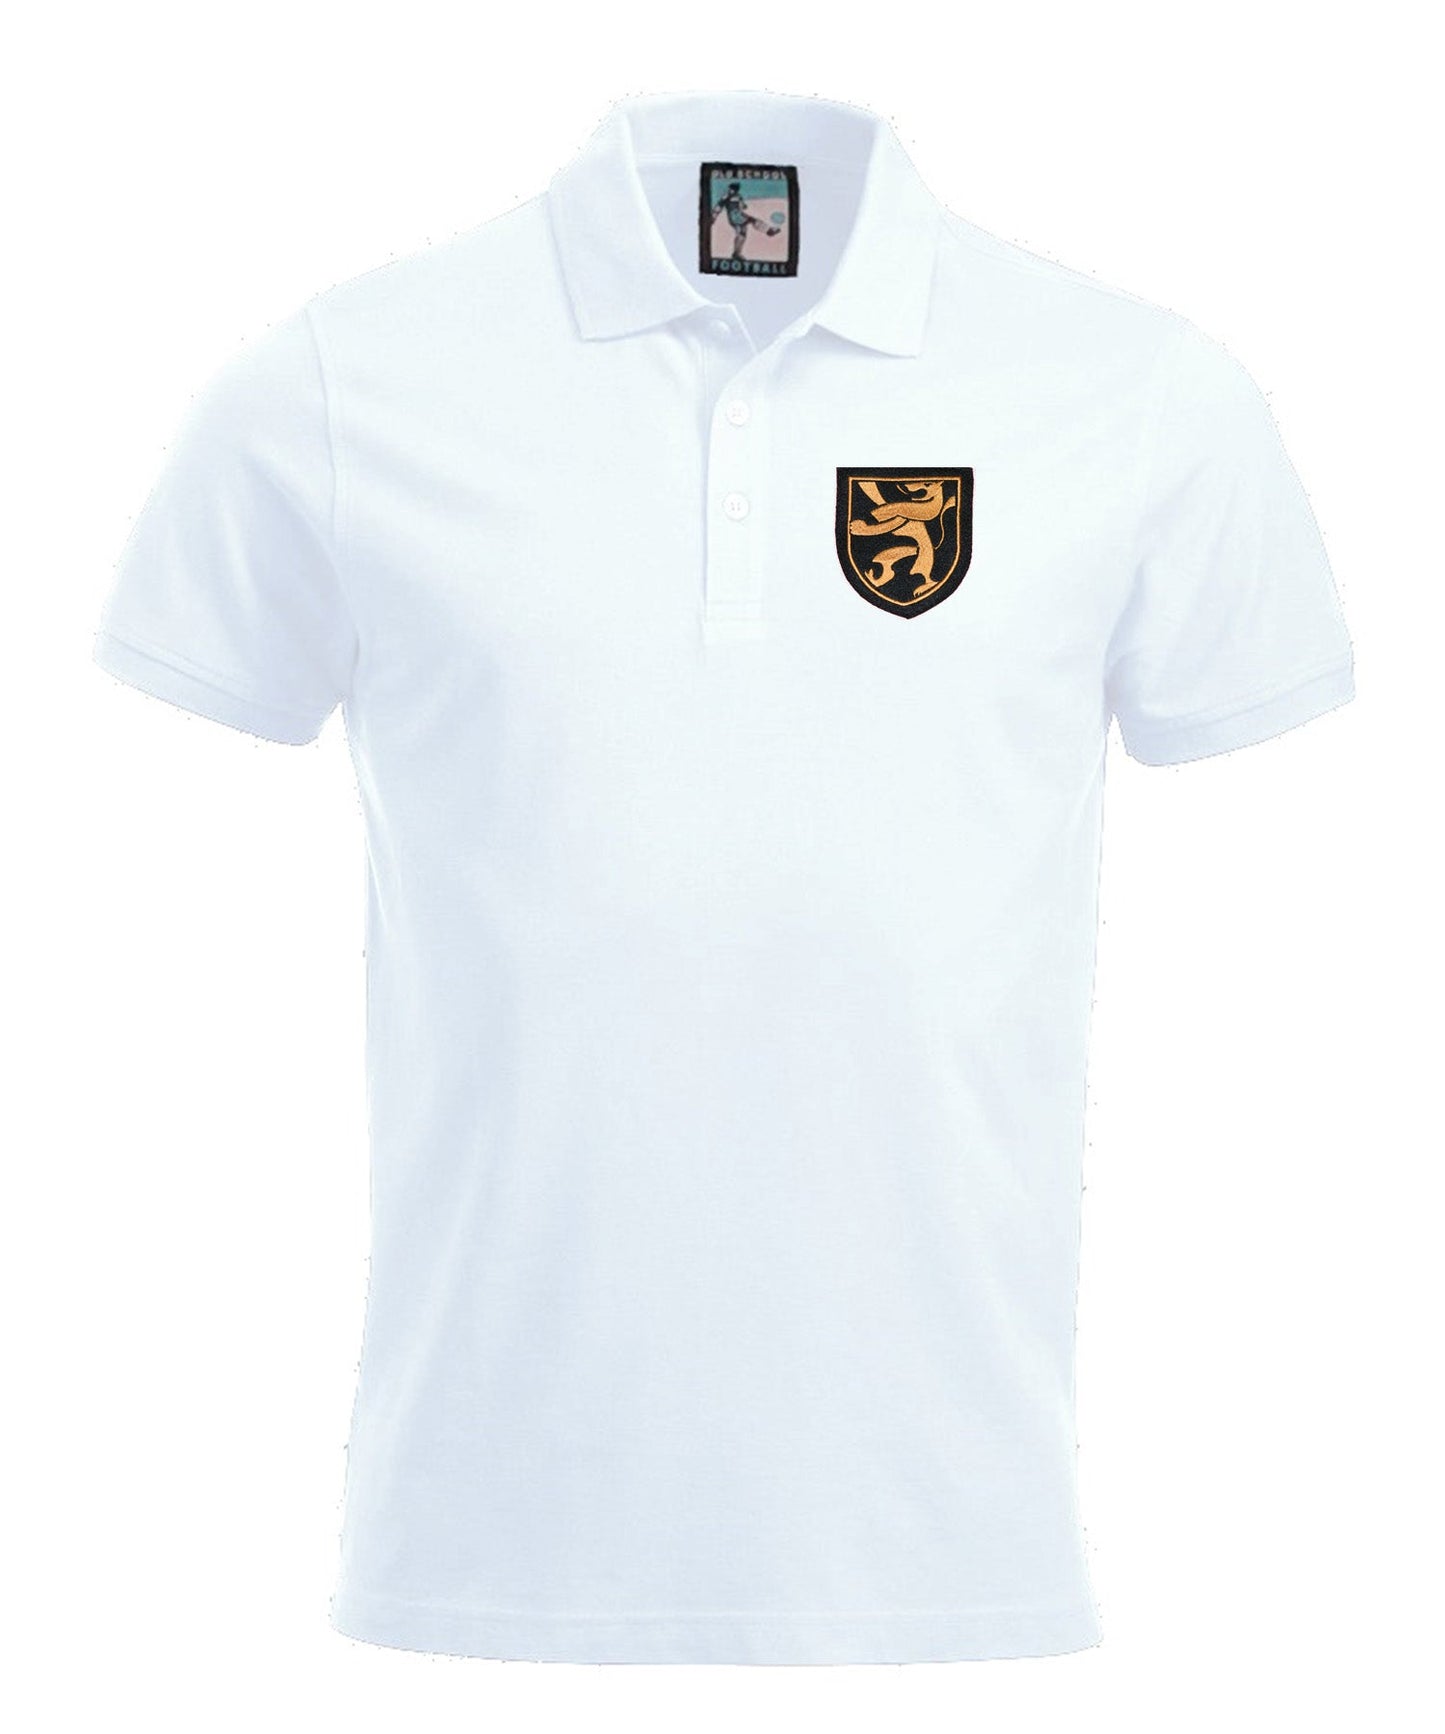 Belgium Retro Football Polo Shirt 1960s-Polo